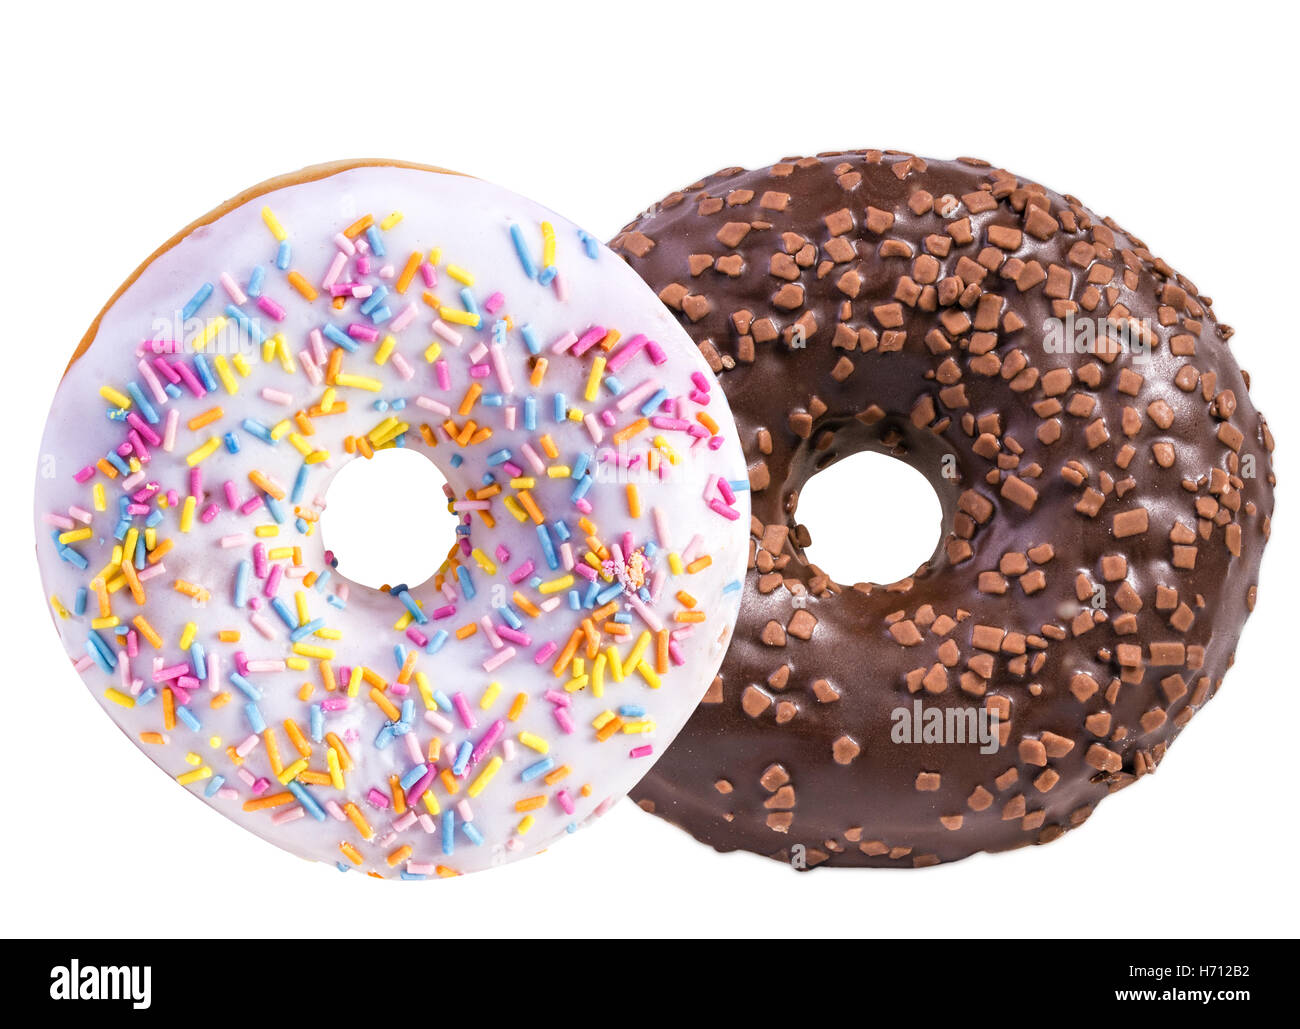 donut isolated on white background Stock Photo